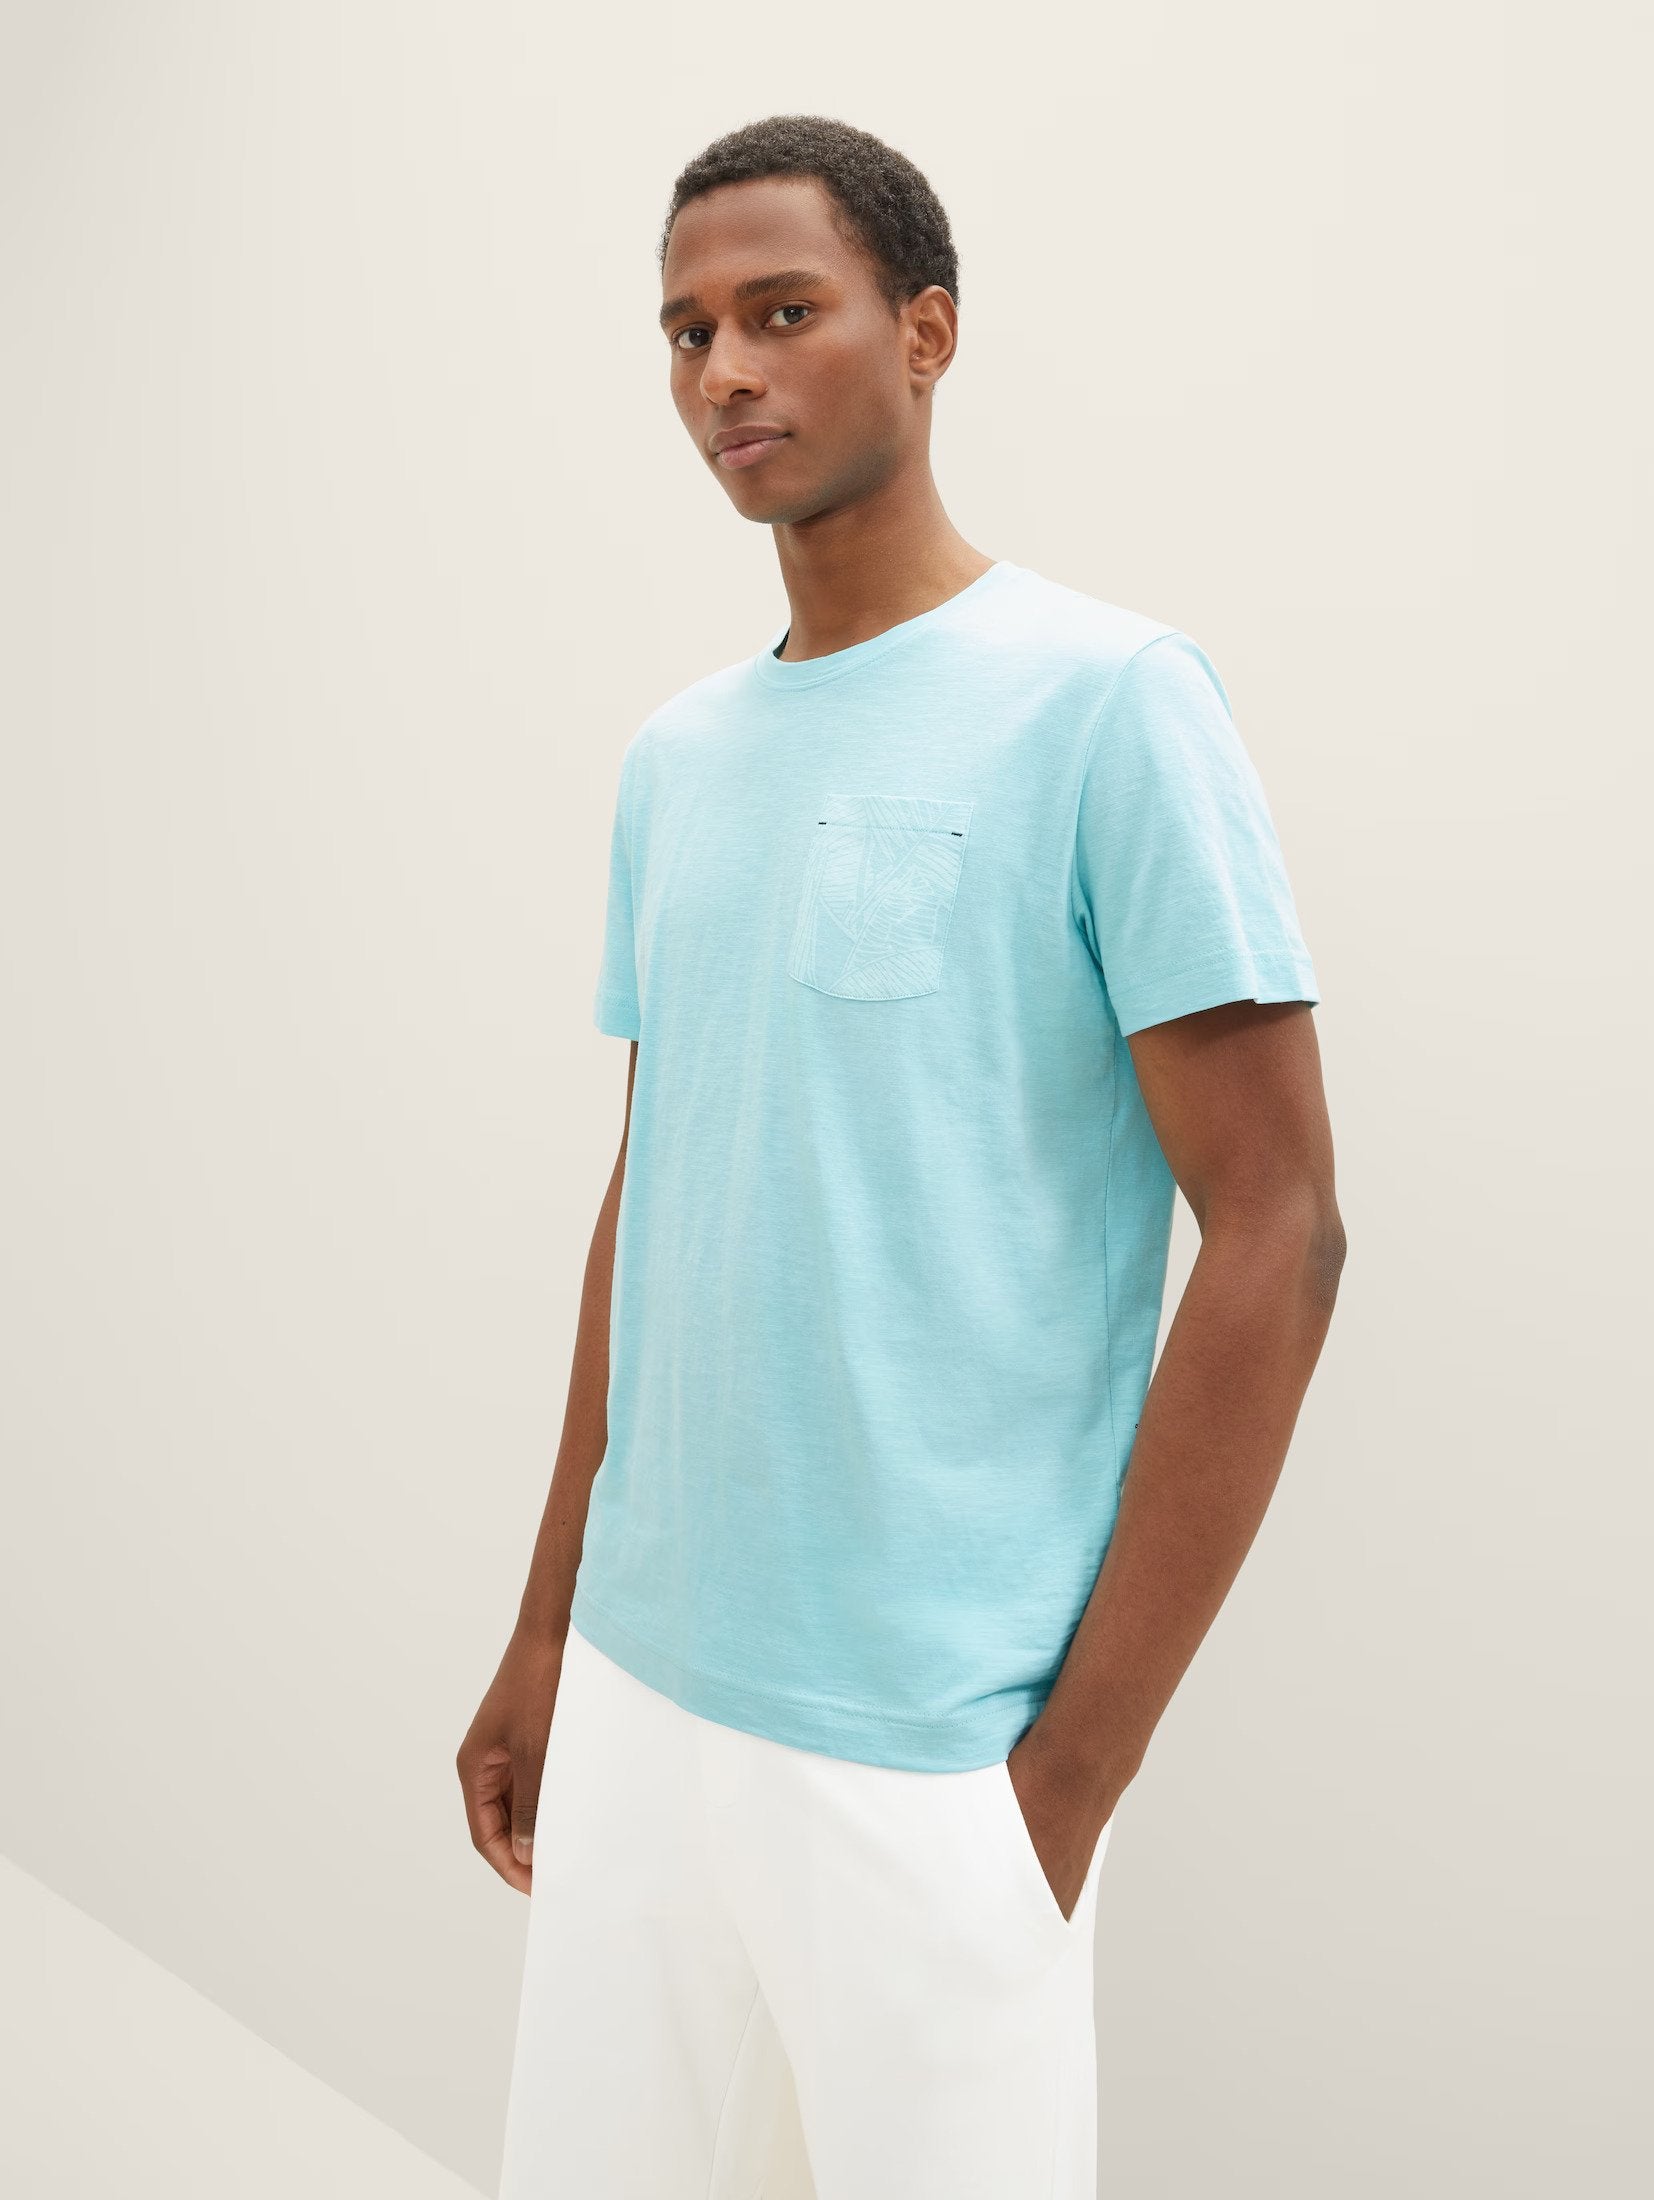 Tom Tailor Aqua Blue T-shirt With Chest Designed Pocket